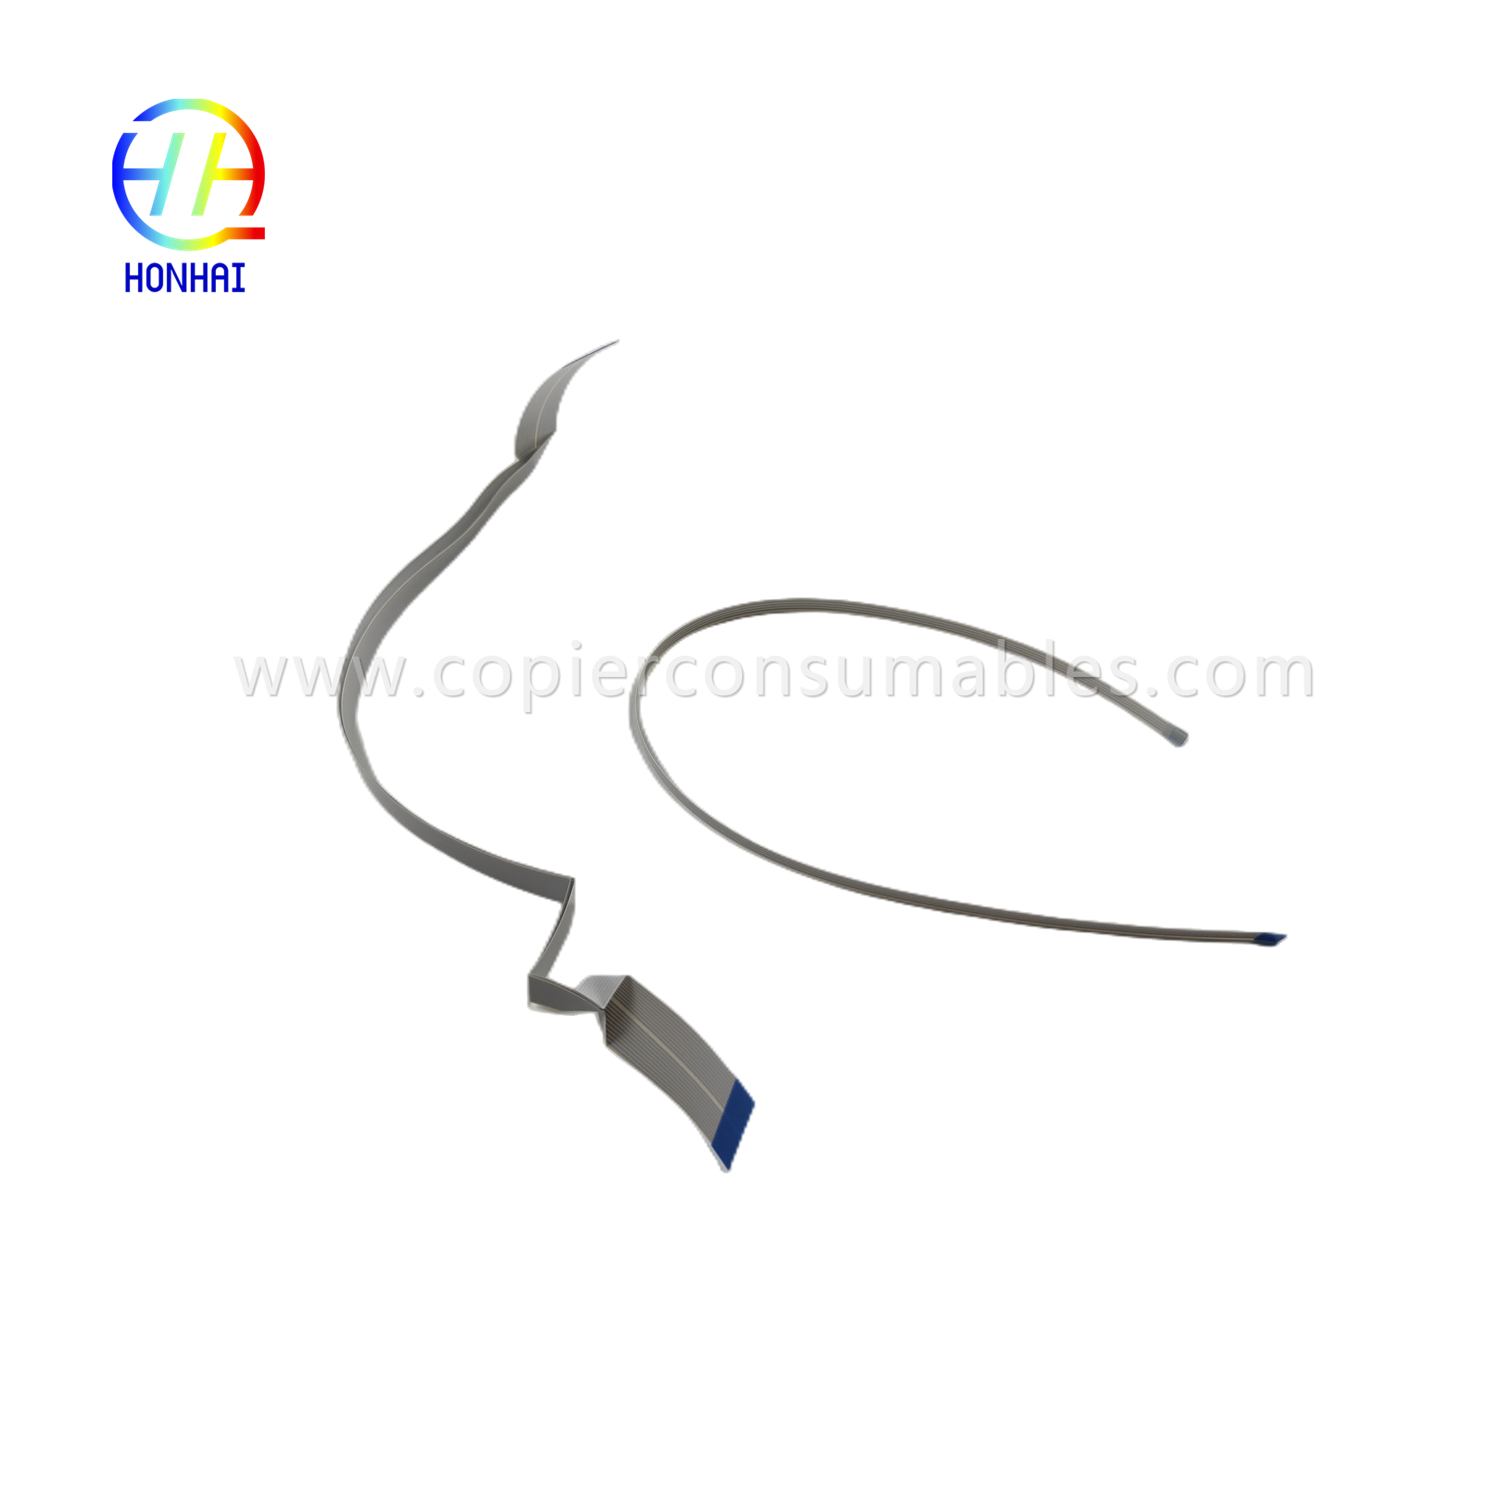 https://c585.goodao.net/flex-cable-for-epson-l1110-l3110-l3210-l3150-l3250-l5190-l5290-head-cable-product/